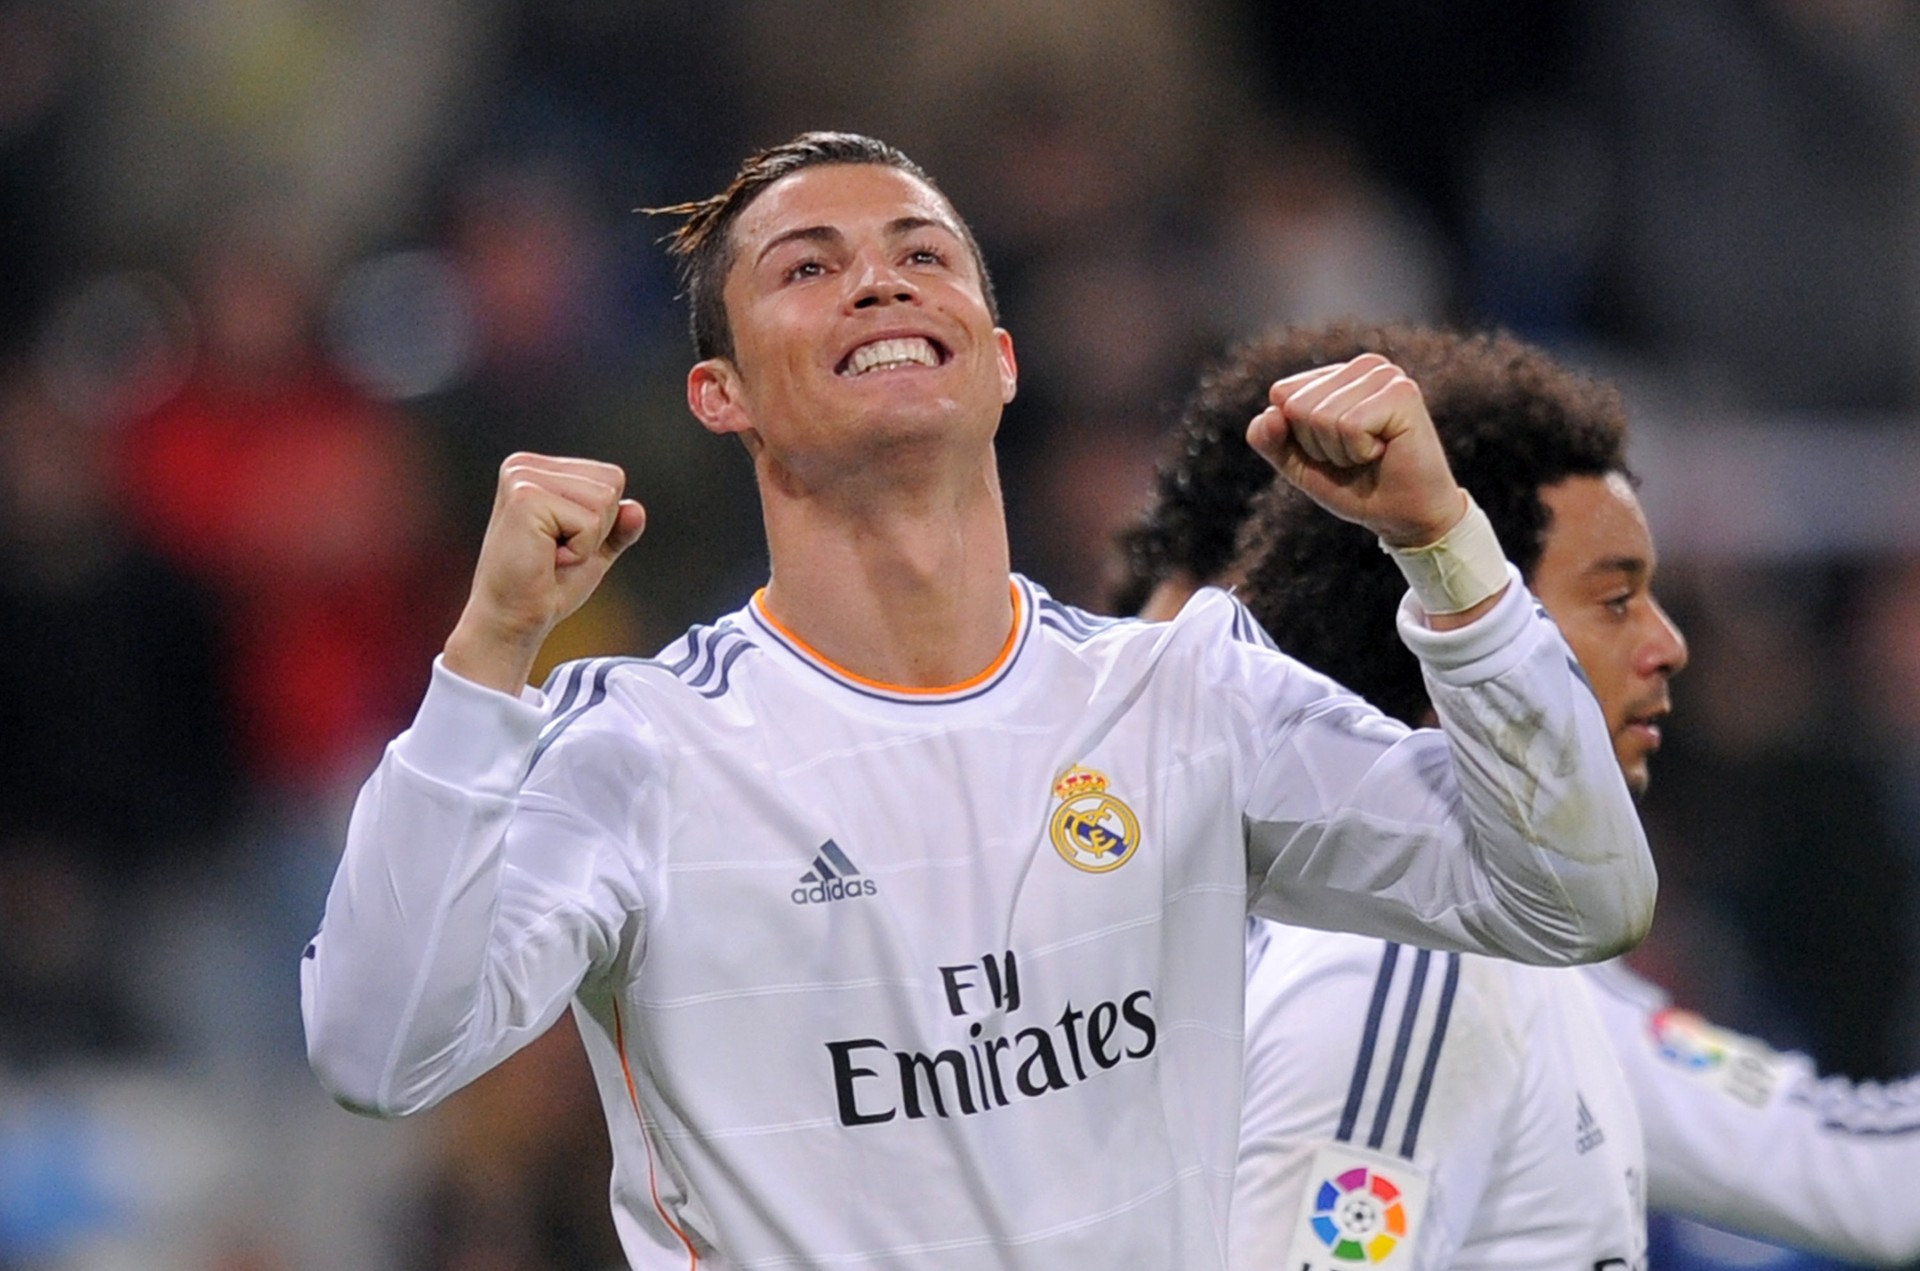 Cristiano Ronaldo desbancou Messi novamente - dessa vez, no marketing (Foto: Getty Images)